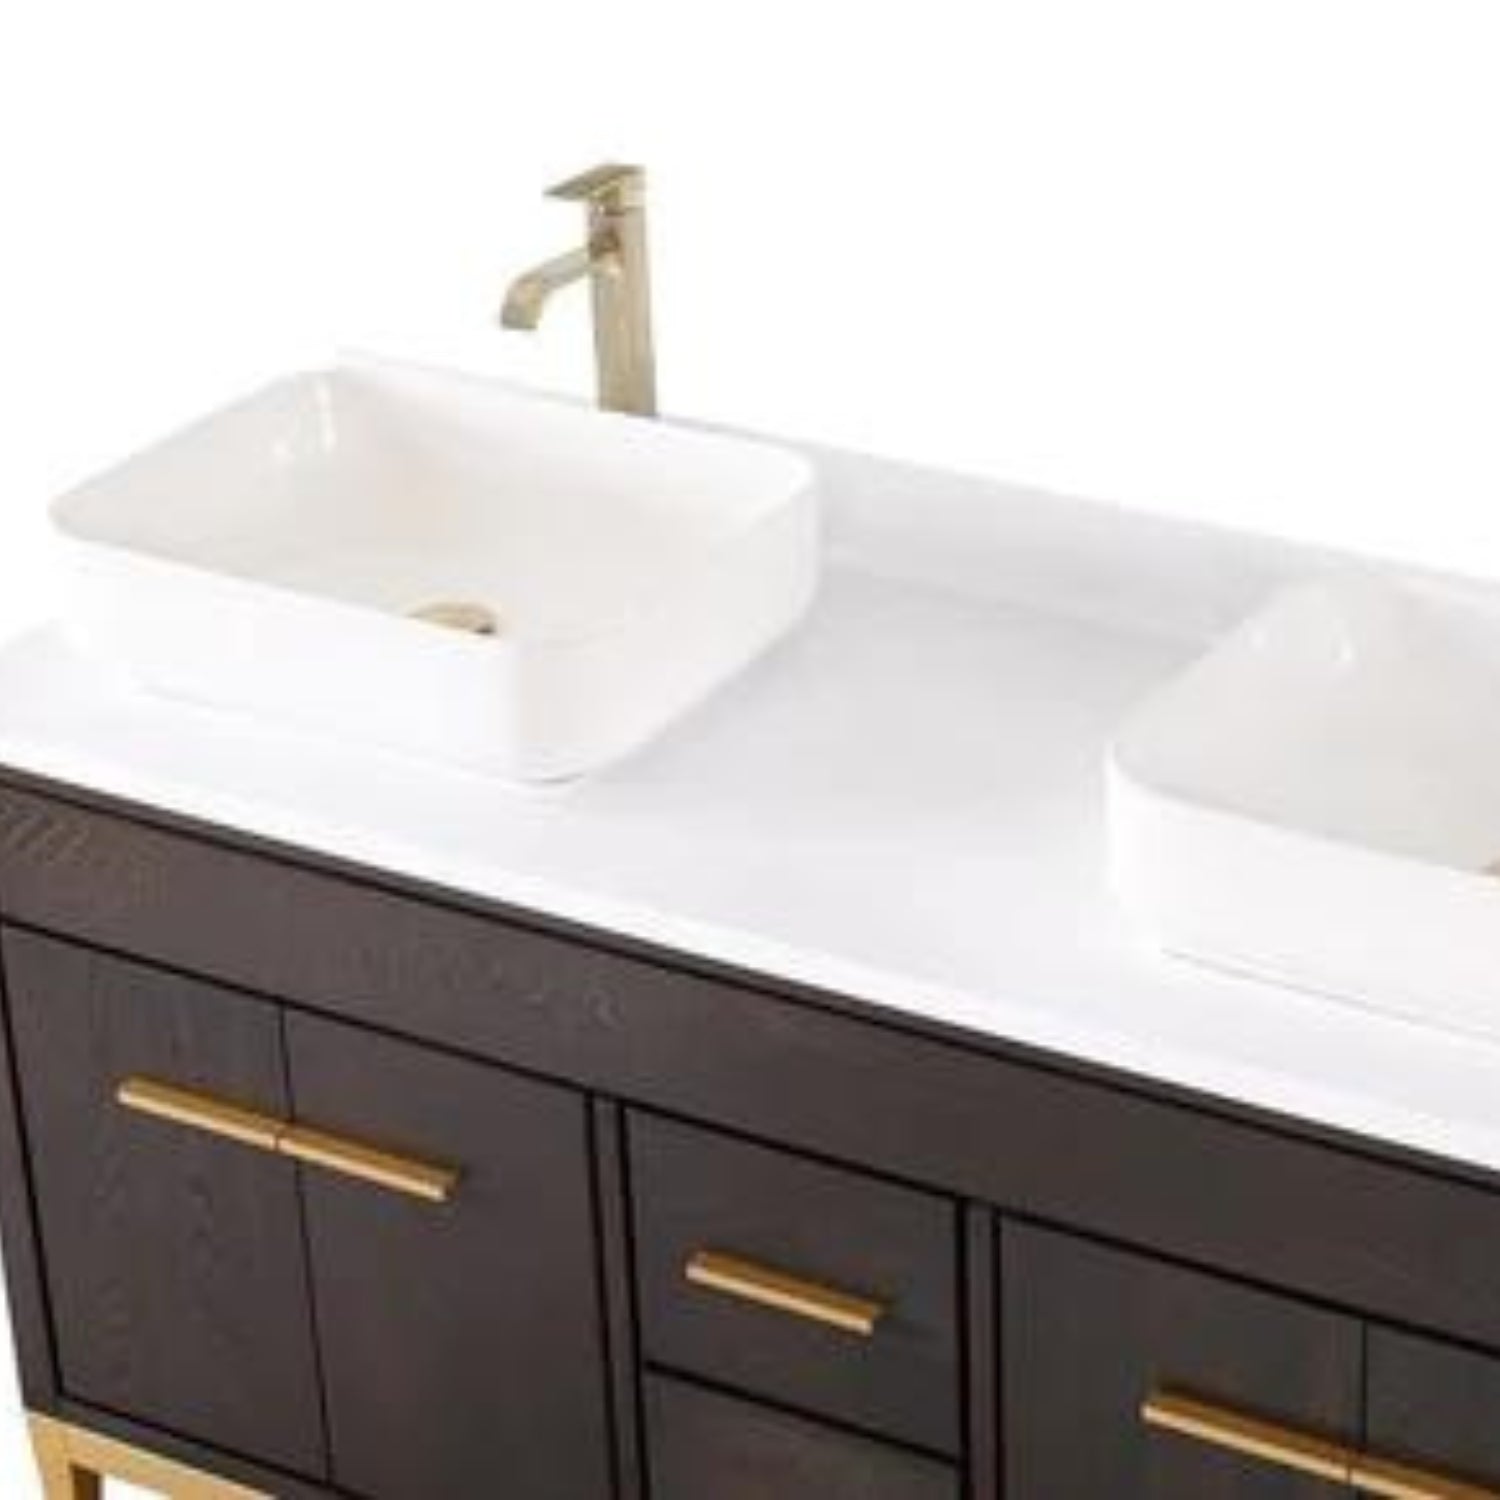 Beatrice 60" Double Bathroom Vanity with White Quartz Top - Contemporary Bathroom Vanity